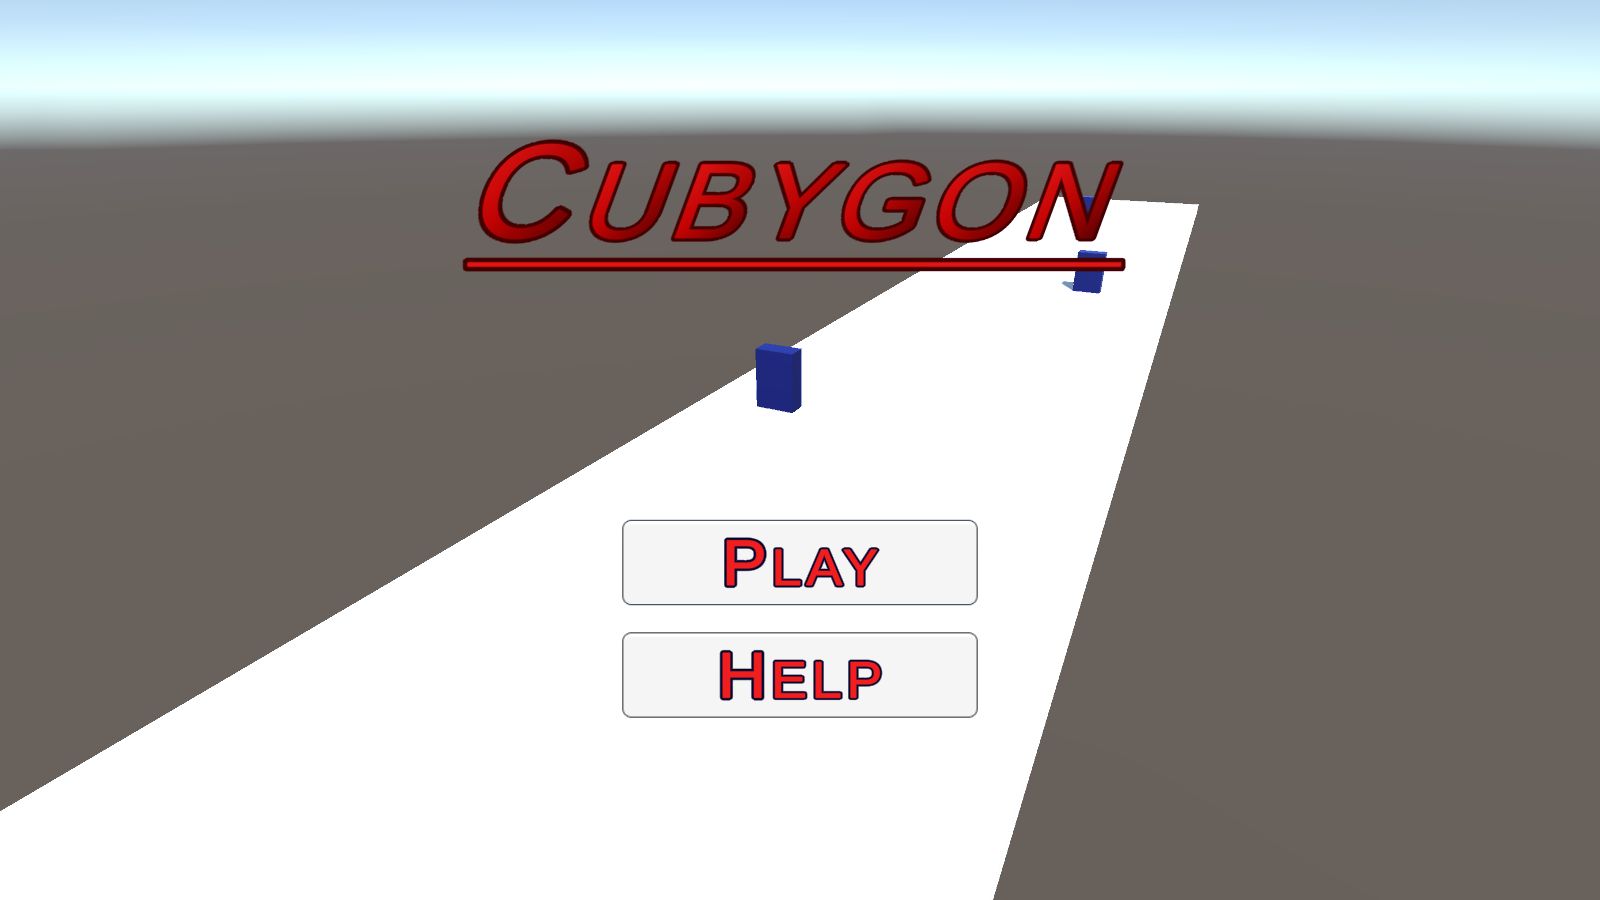 Cubygon V.1